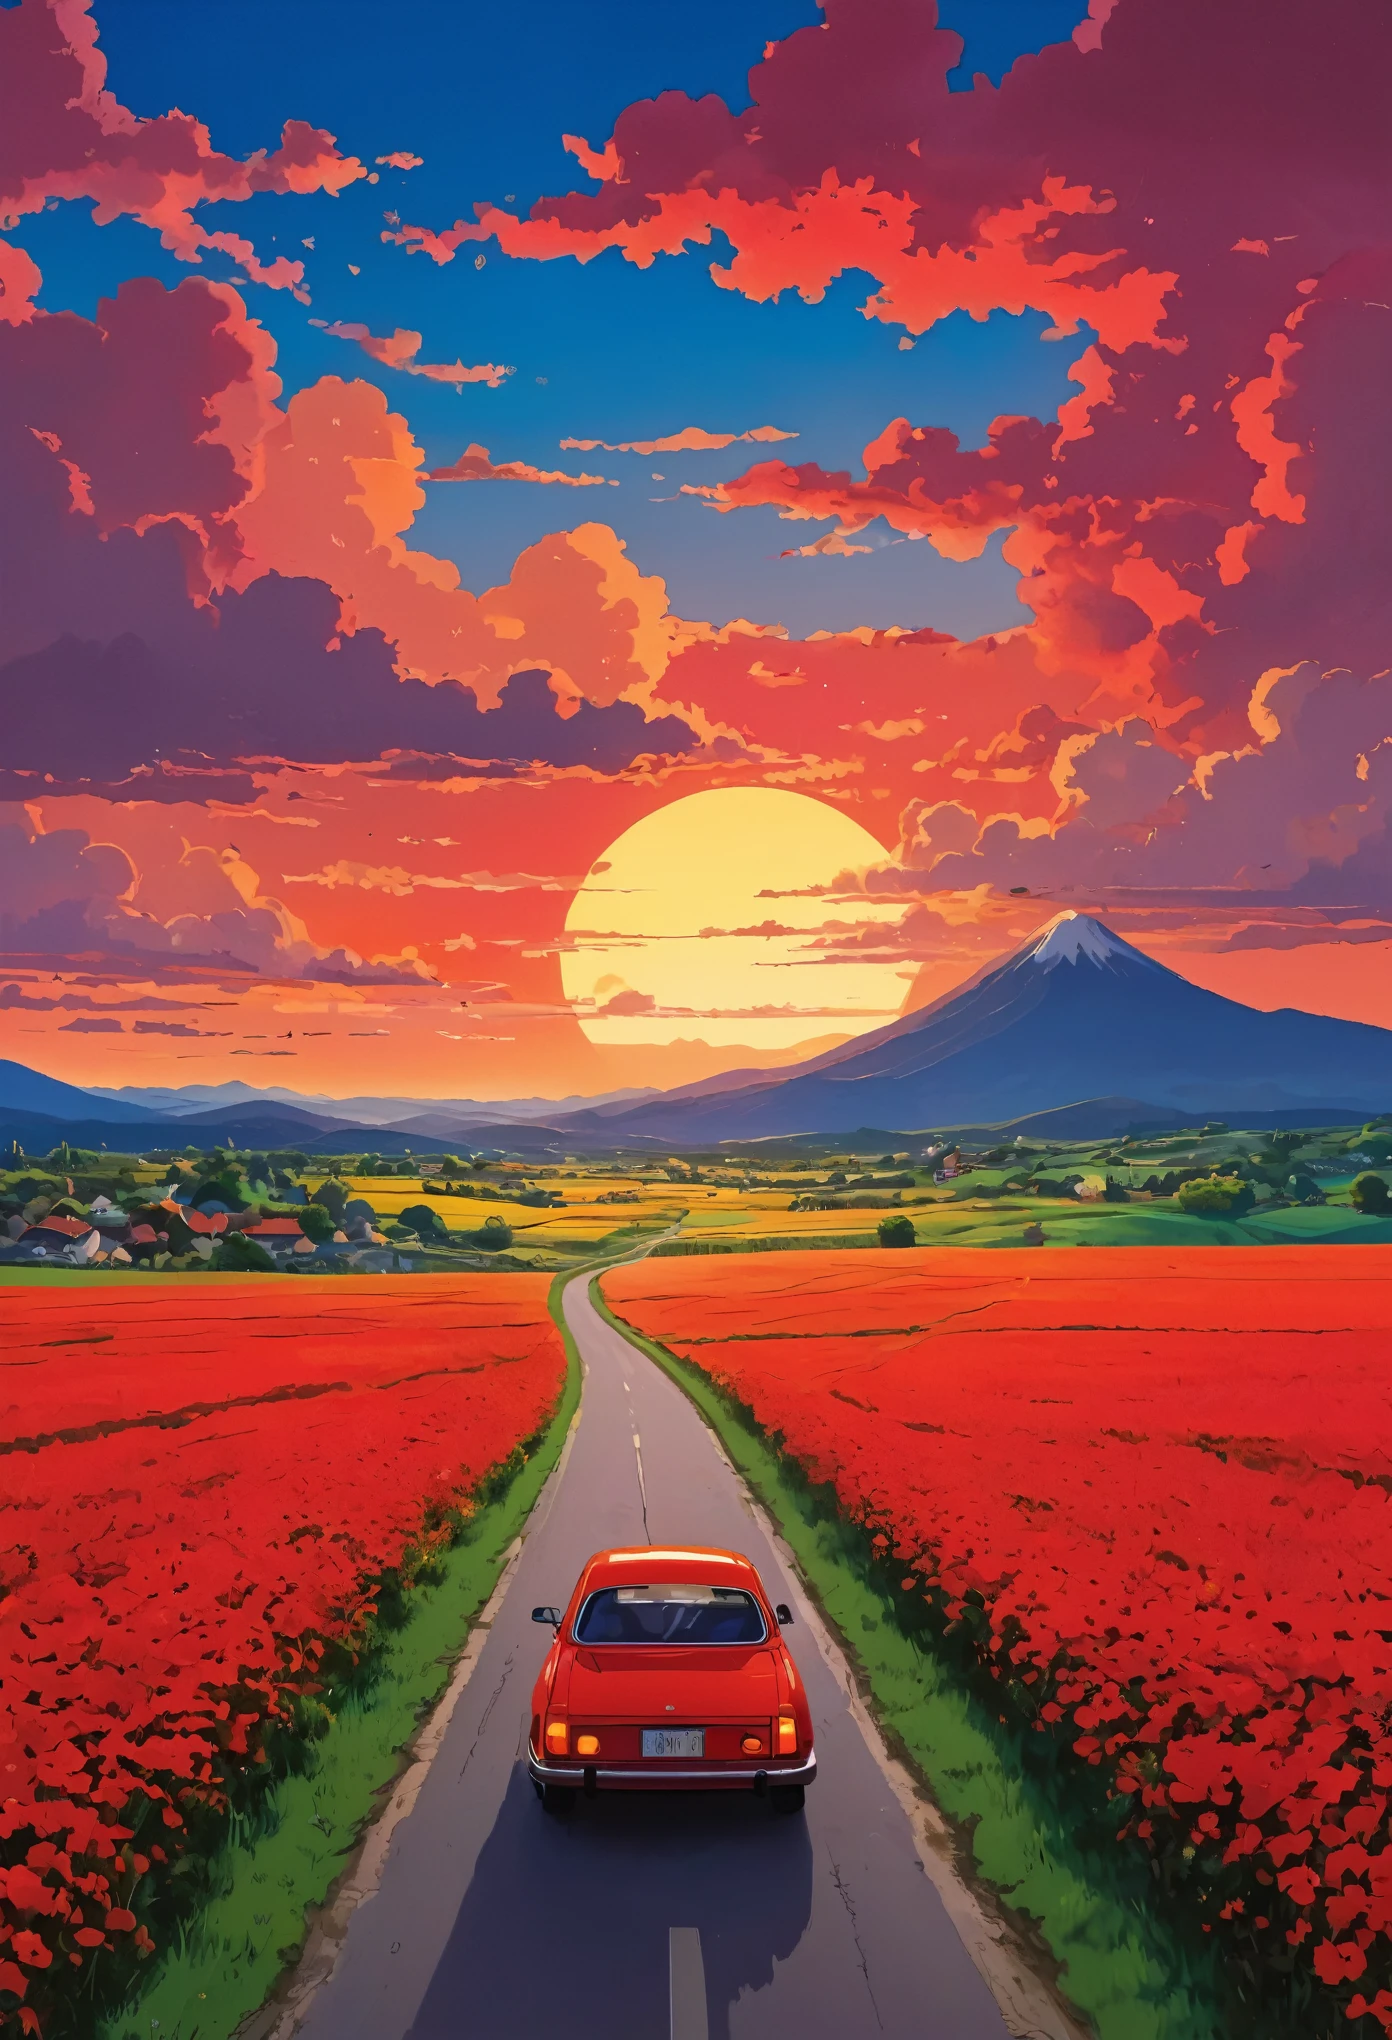 (極簡主義:1.4), 路上有一輛紅色的車, 吉卜力工作室藝術, 宮崎, 有紅色天空和紅色雲彩的牧場, 日落景觀, 開滿鮮花的路, 鮮豔的色彩 